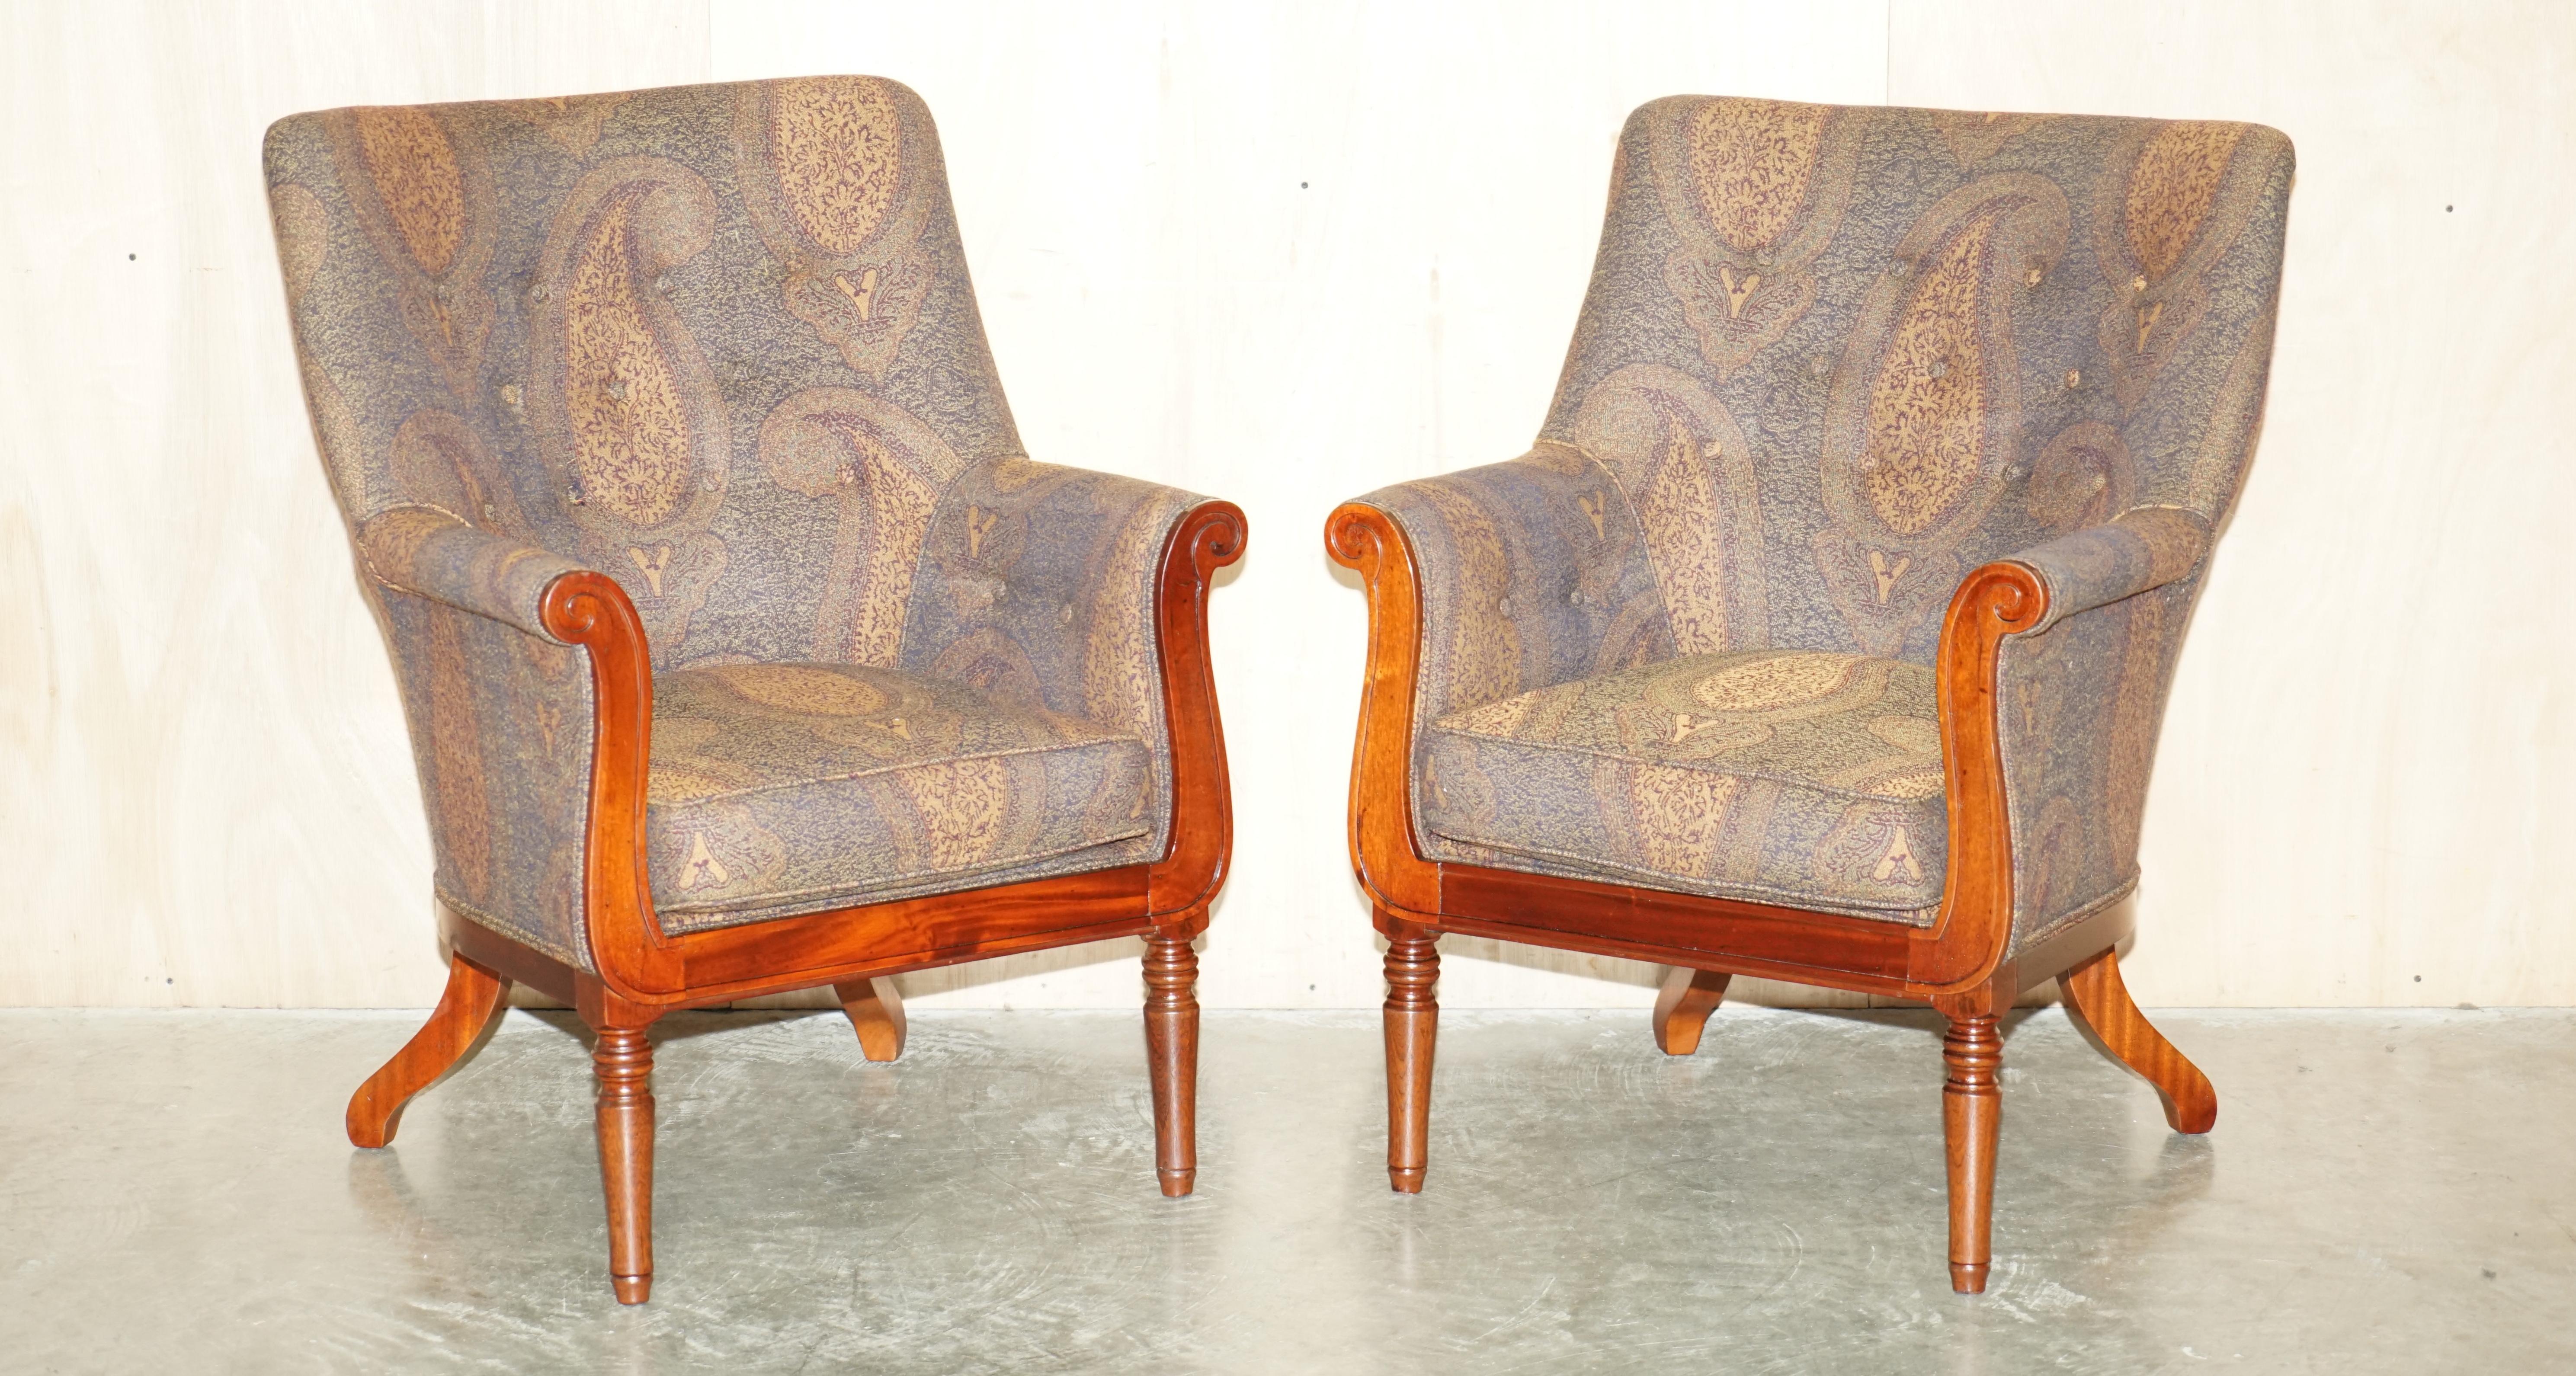 Royal House Antiques

The House Antiques a le plaisir de proposer à la vente cette superbe paire de fauteuils de bibliothèque George Smith William IV RRP £16,000 avec une superbe tapisserie. 

Veuillez noter que les frais de livraison indiqués ne